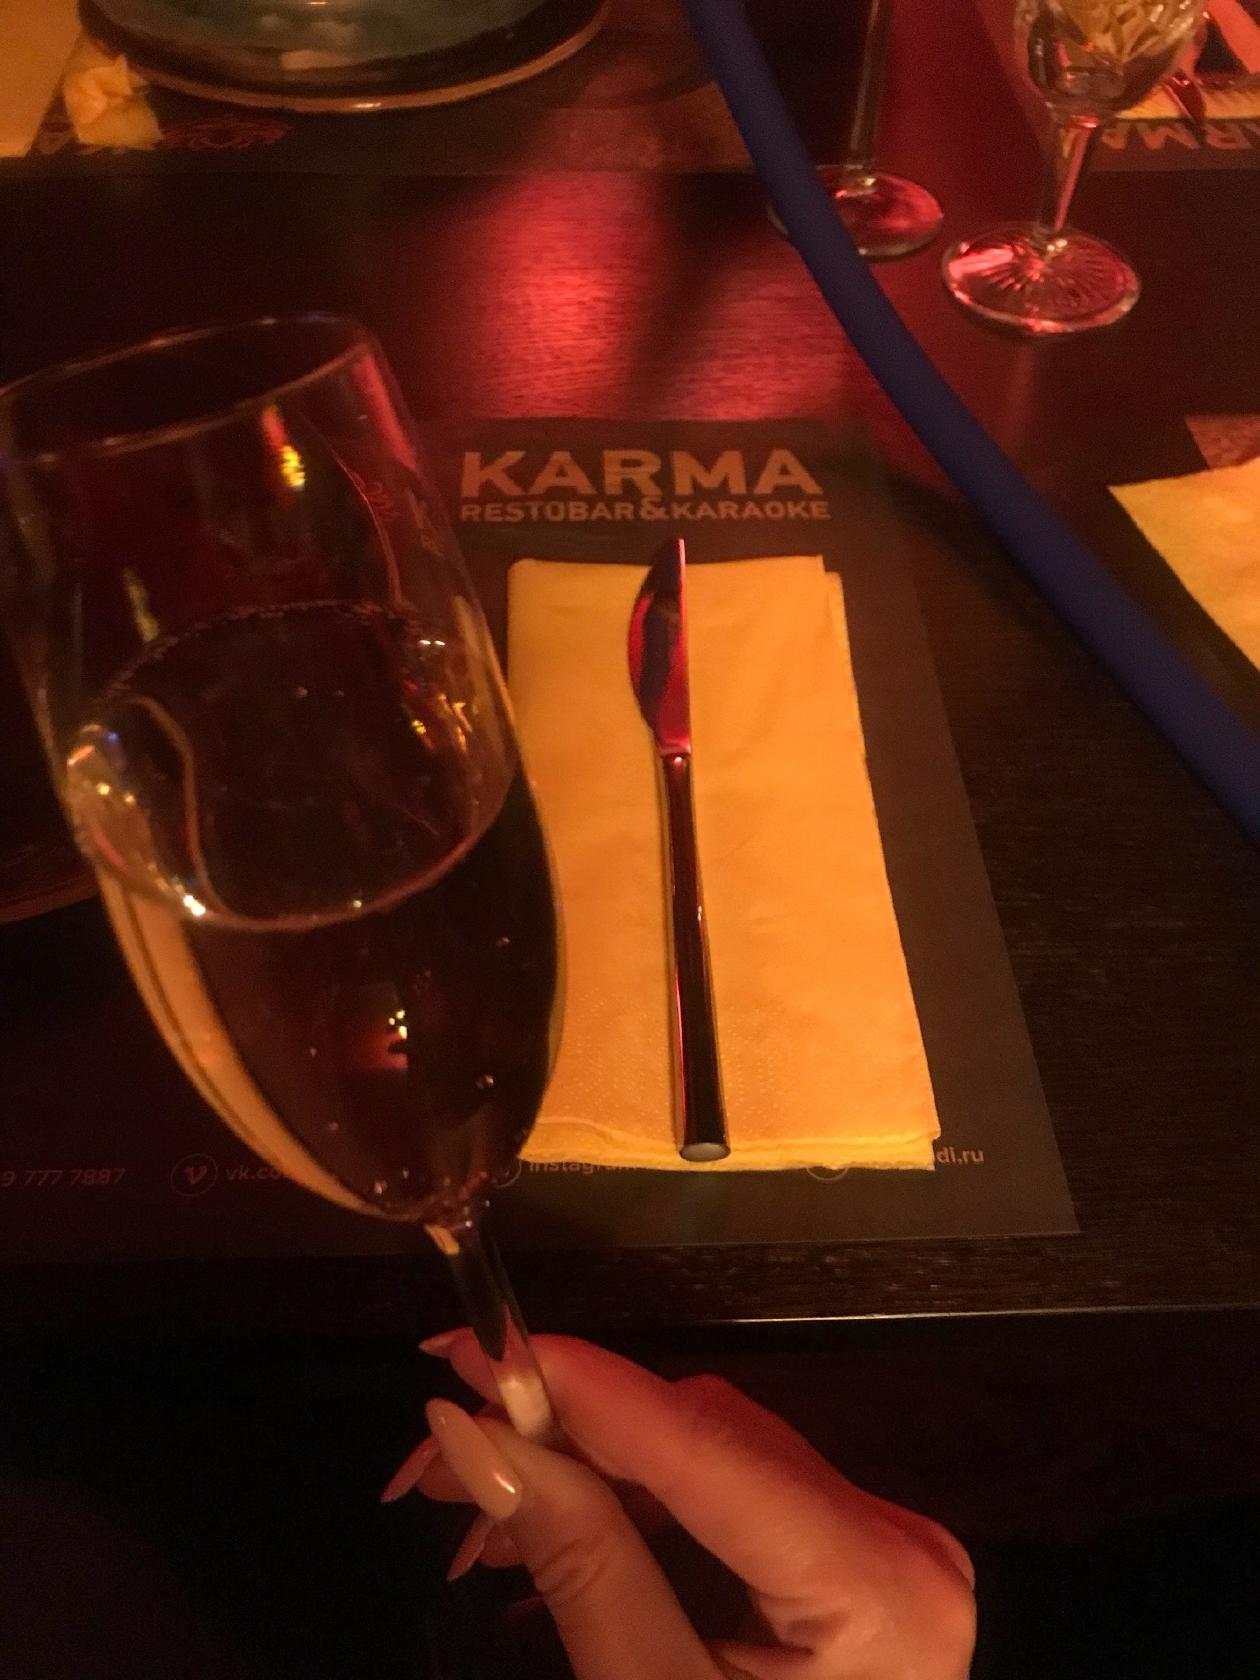 Karma Restobar&Karaoke